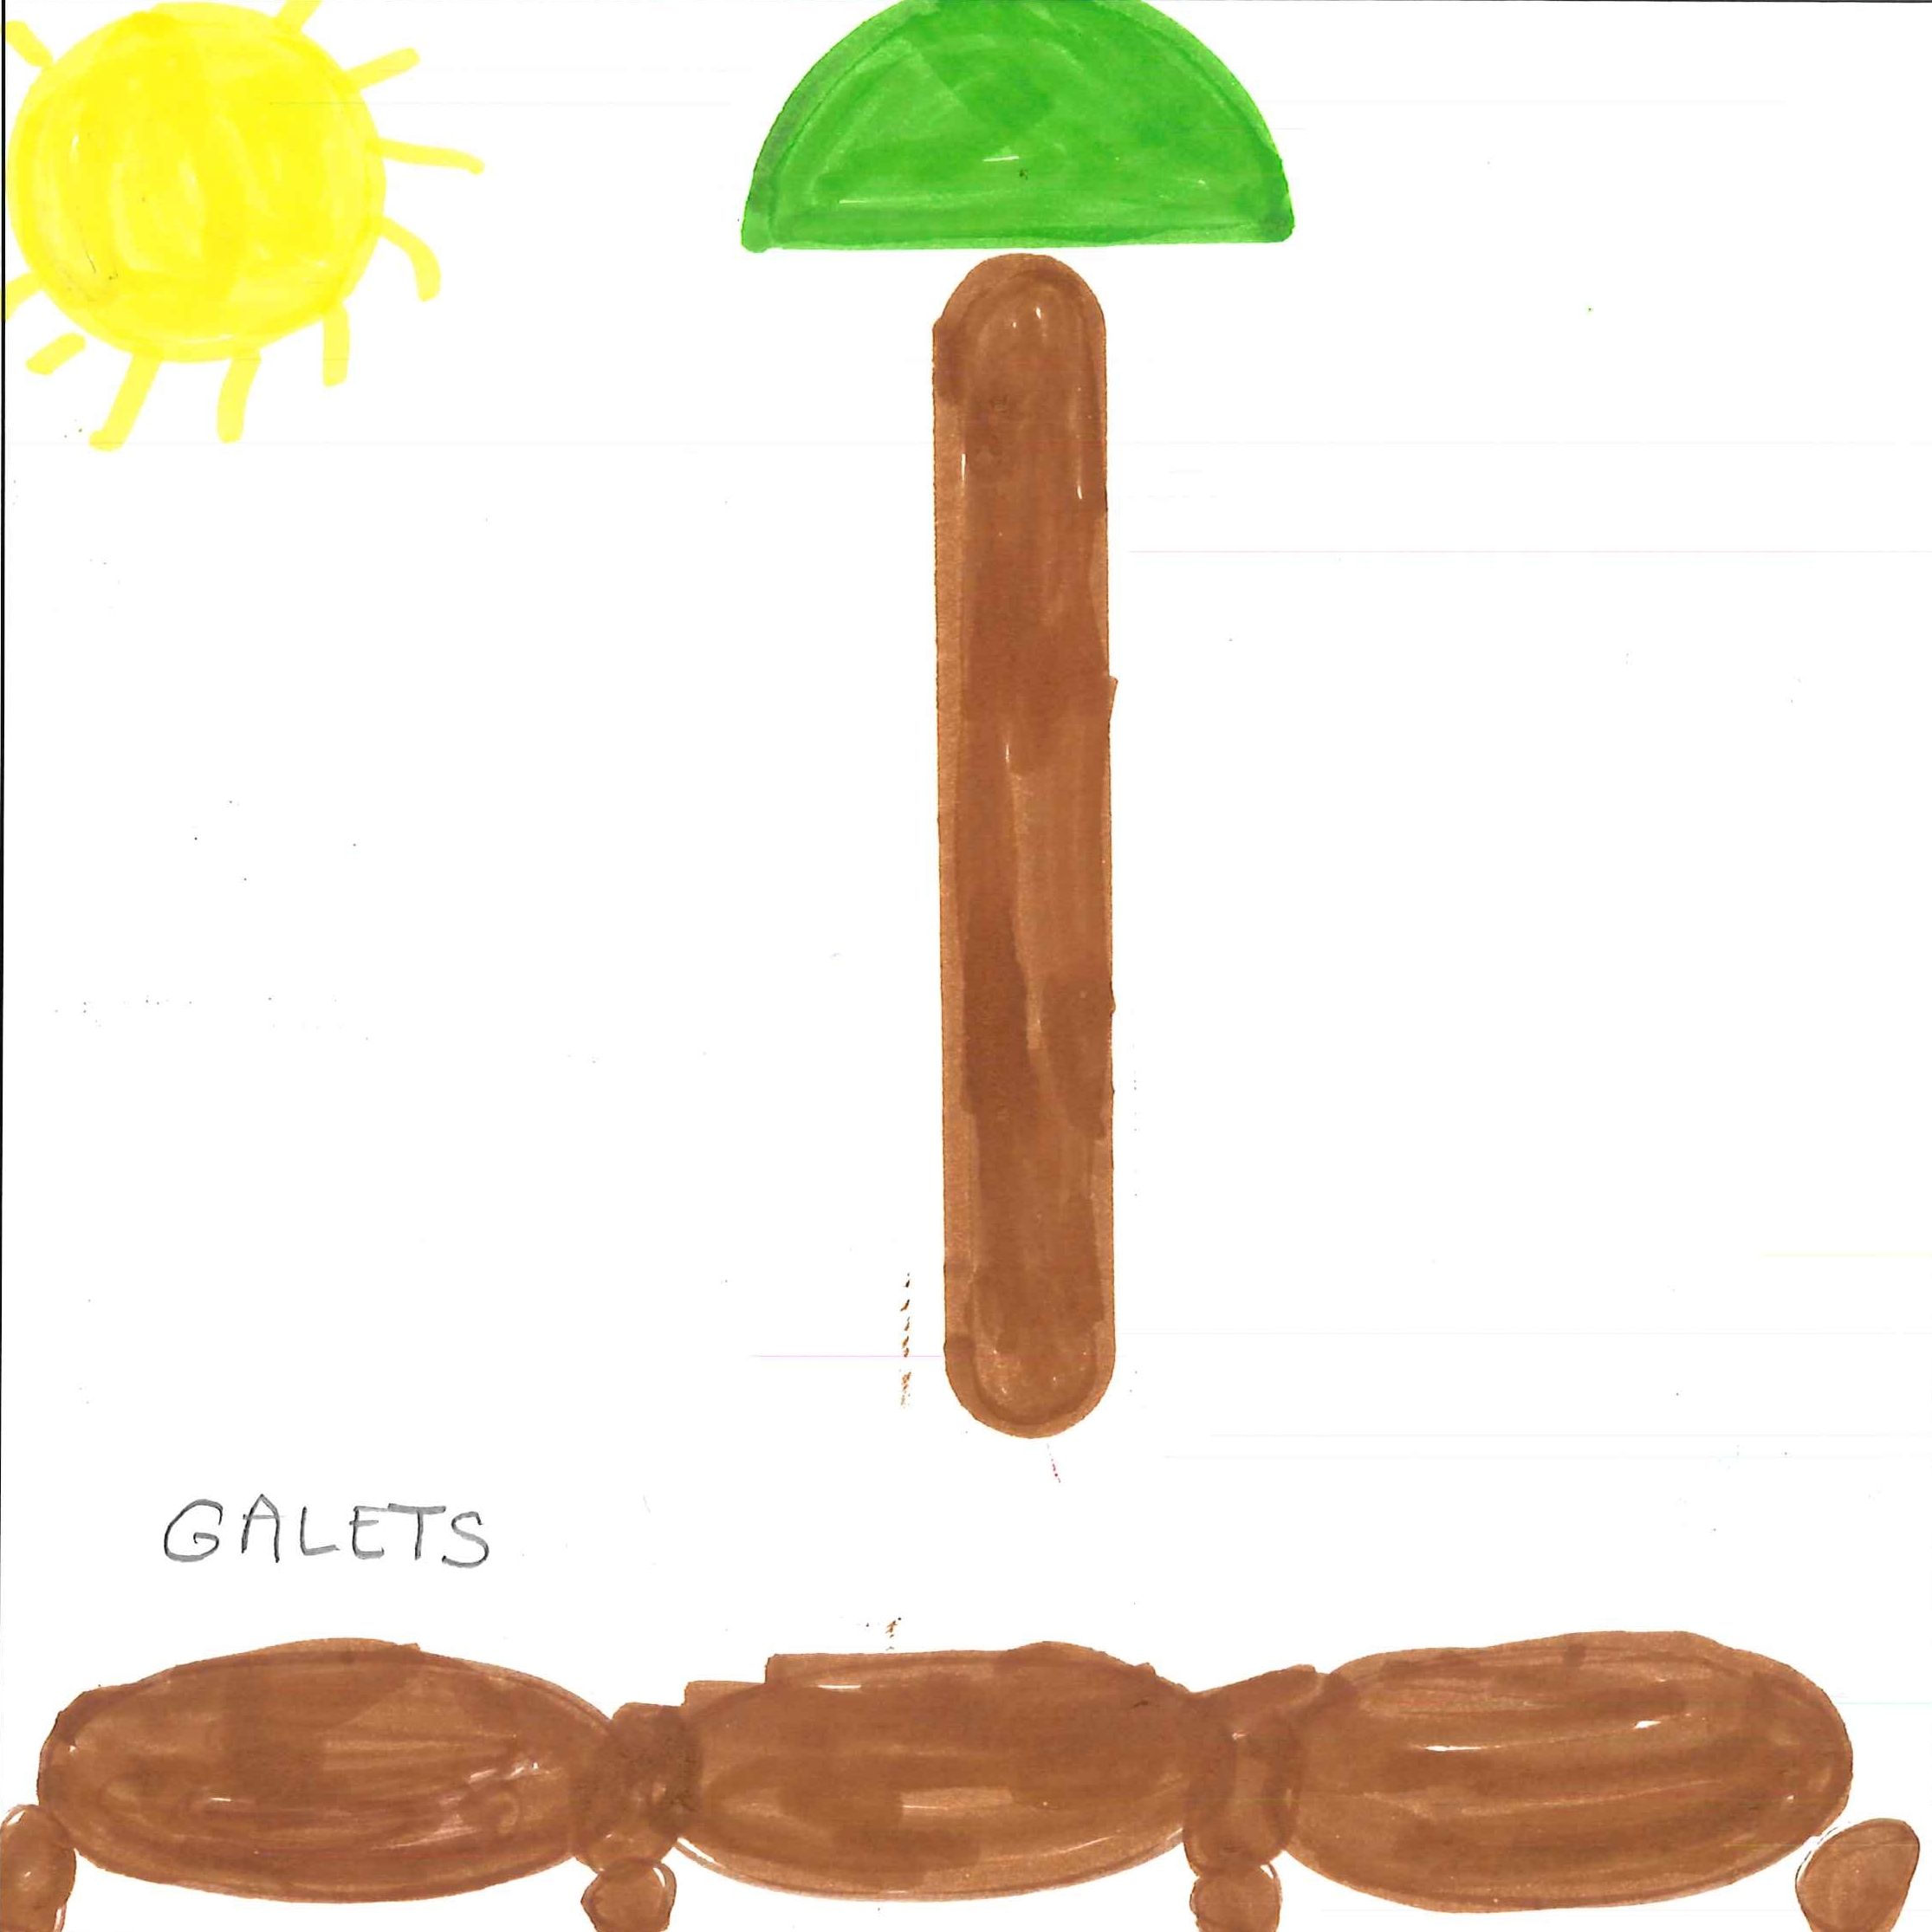 Dessin de Gabriel (6 ans). Mot: GaletsTechnique: Crayons.